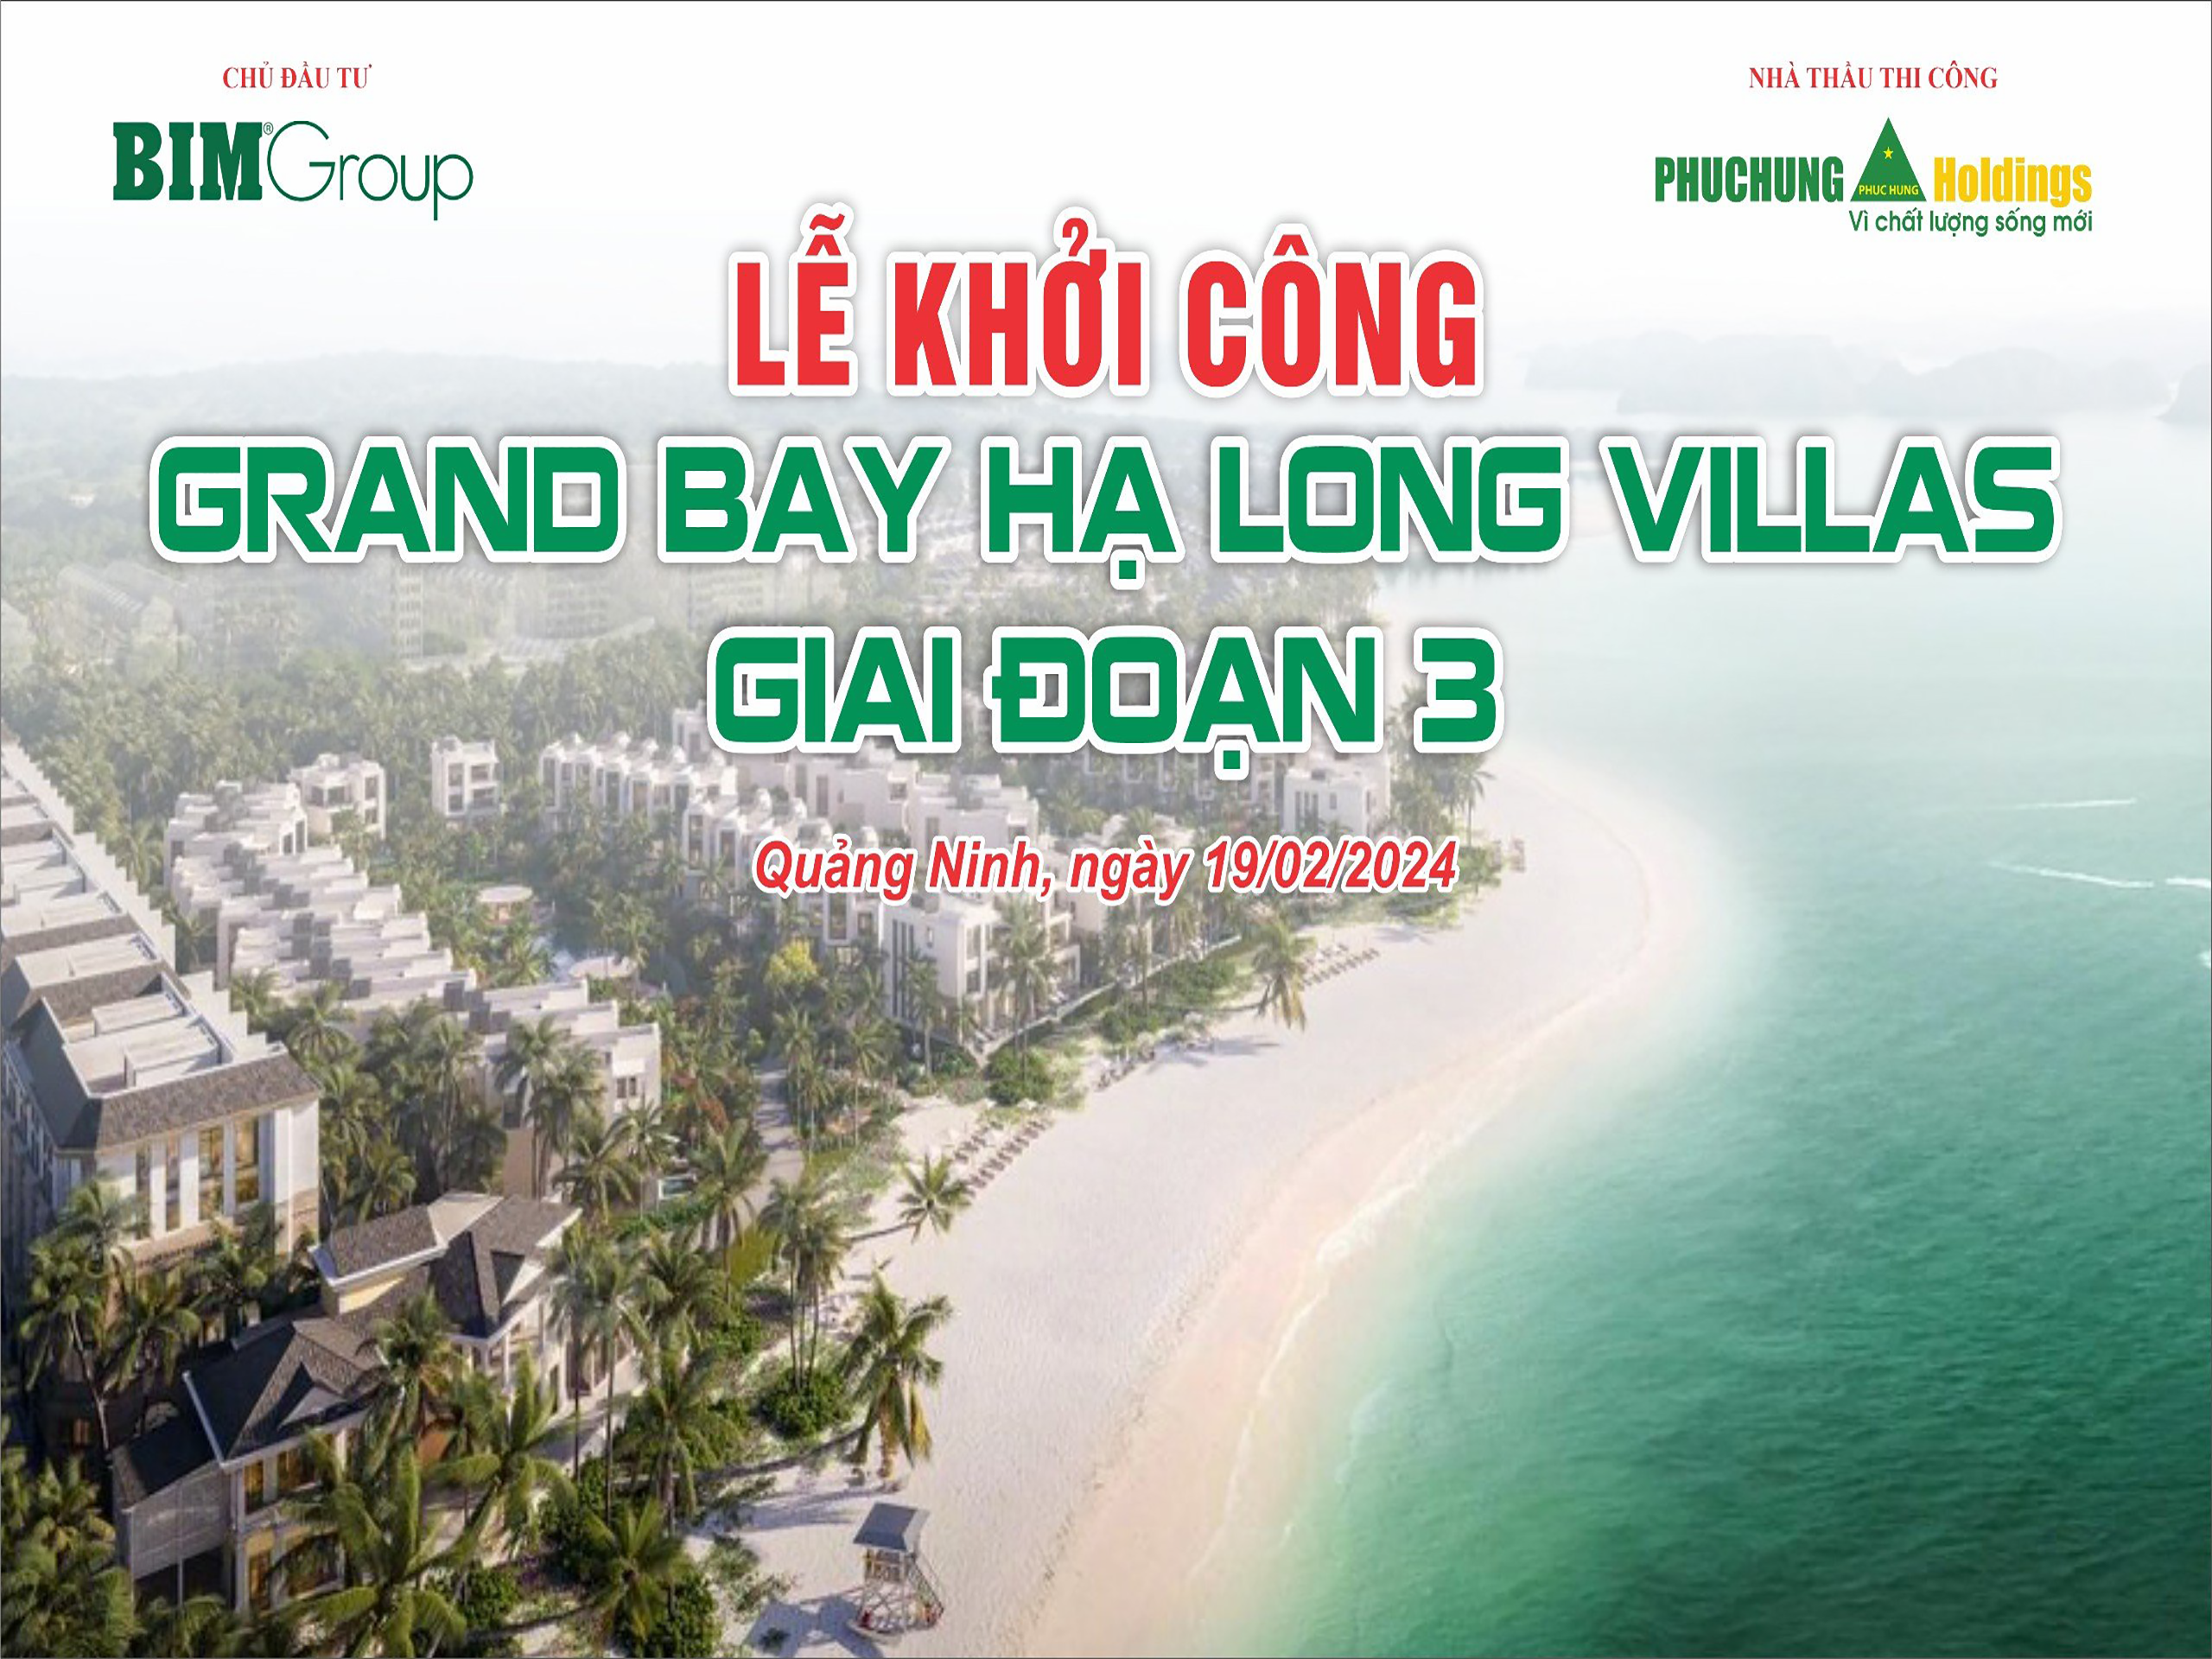 KHỞI CÔNG DỰ ÁN GRAND BAY HẠ LONG VILLAS 3 (LAGOON RESIDENCES)